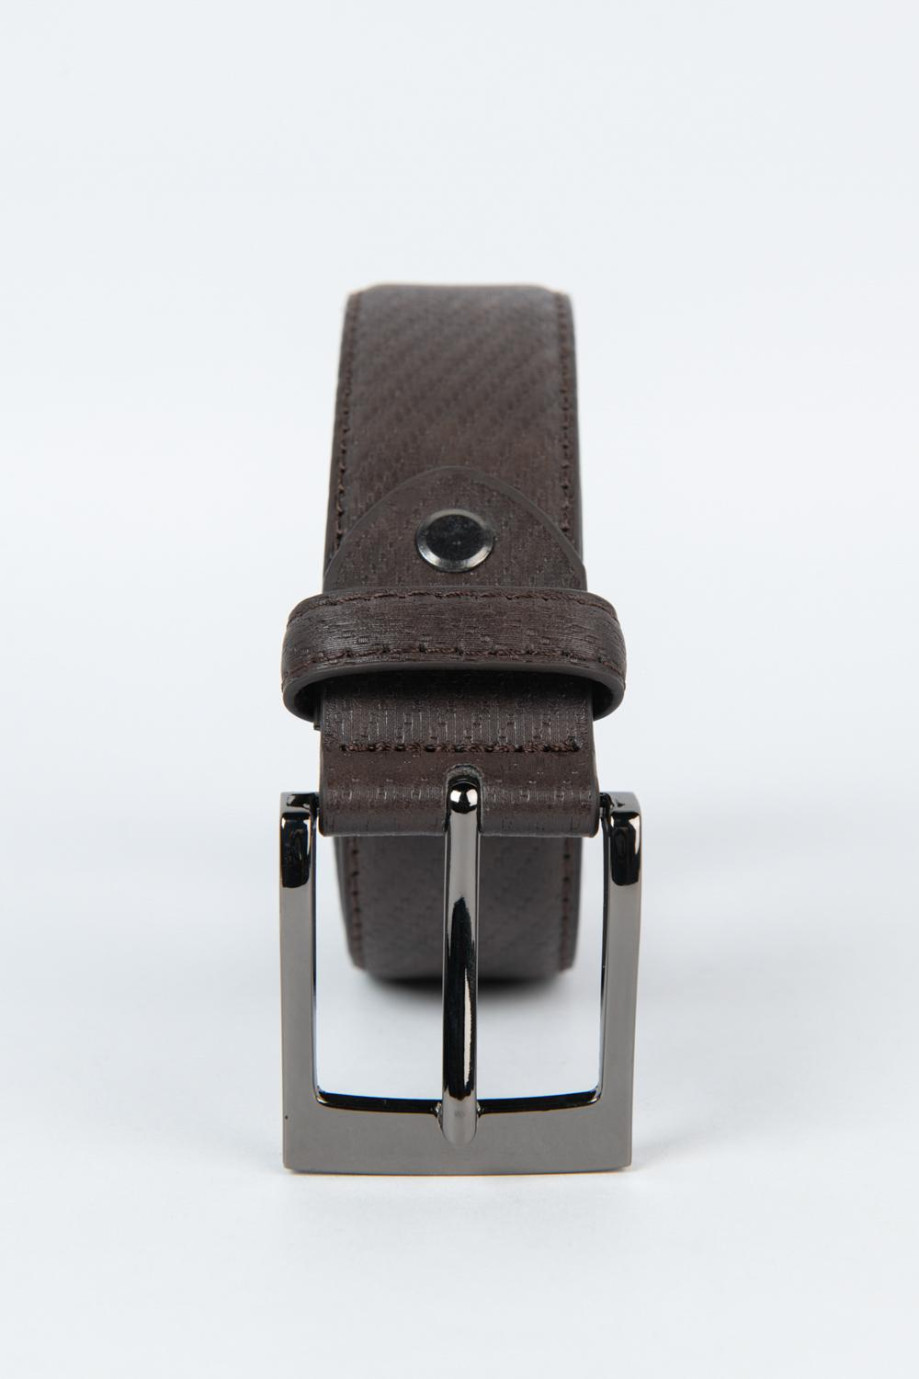 Cinturón café oscuro con hebilla cuadrada metalica.